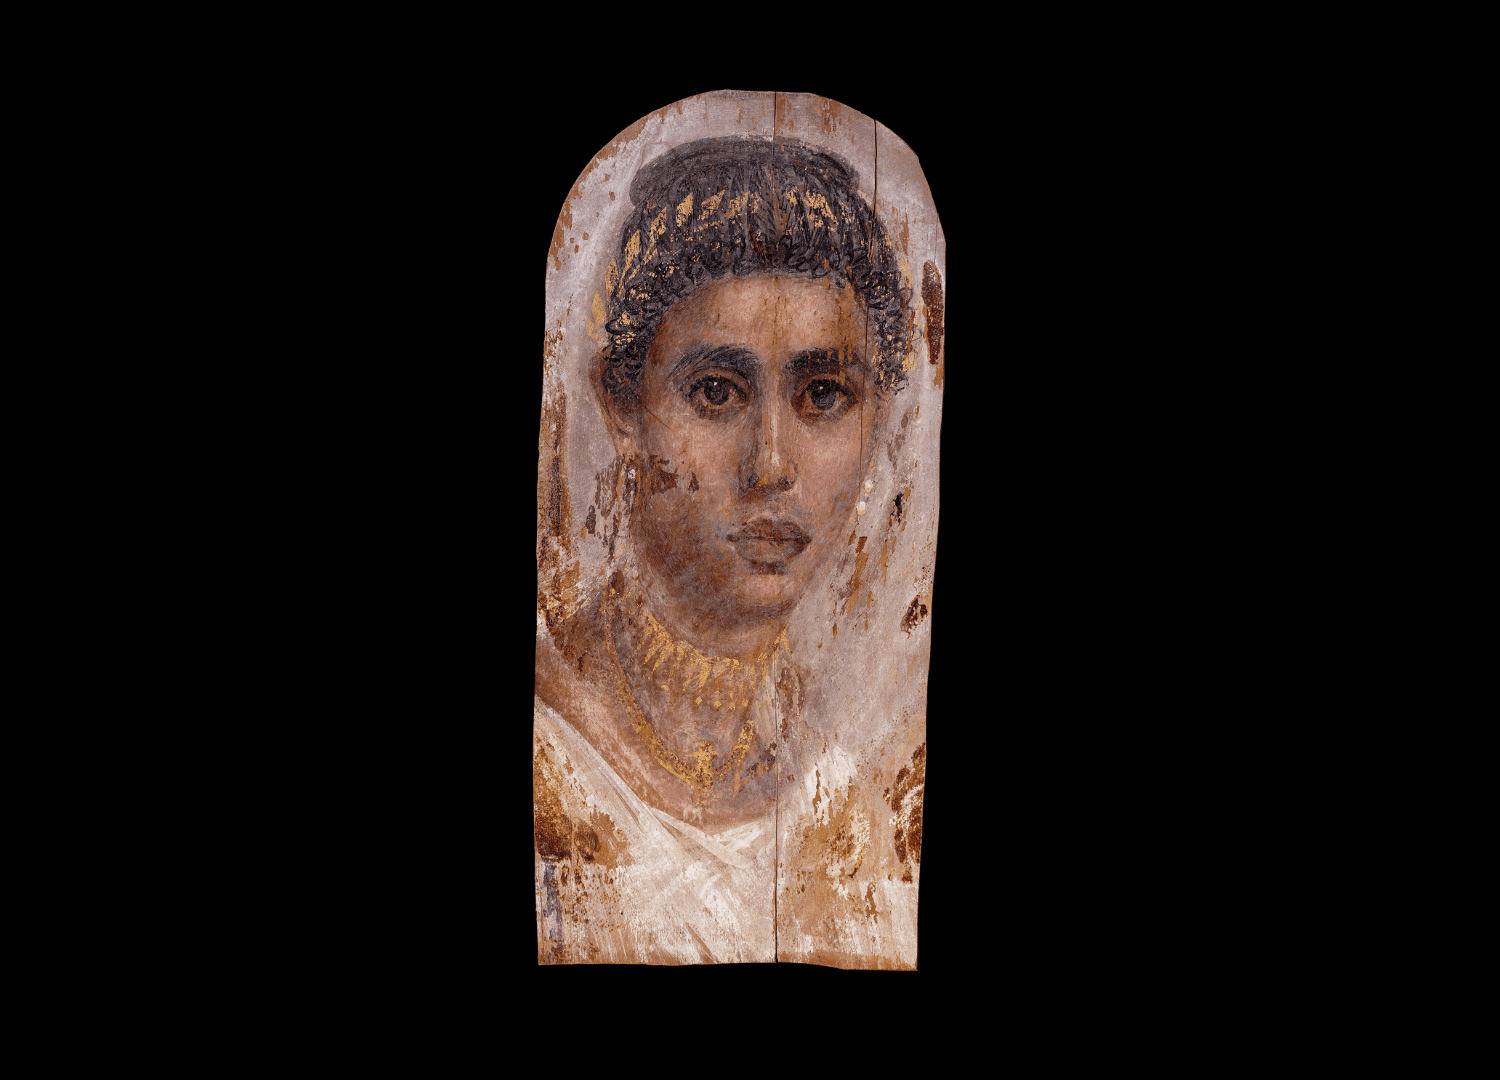 Retrato de una mujer. Témpera y encáustica sobre madera de tilo, alrededor de los años 100-120 d.C. Saqqara, Egipto. | © Trustees of the British Museum.